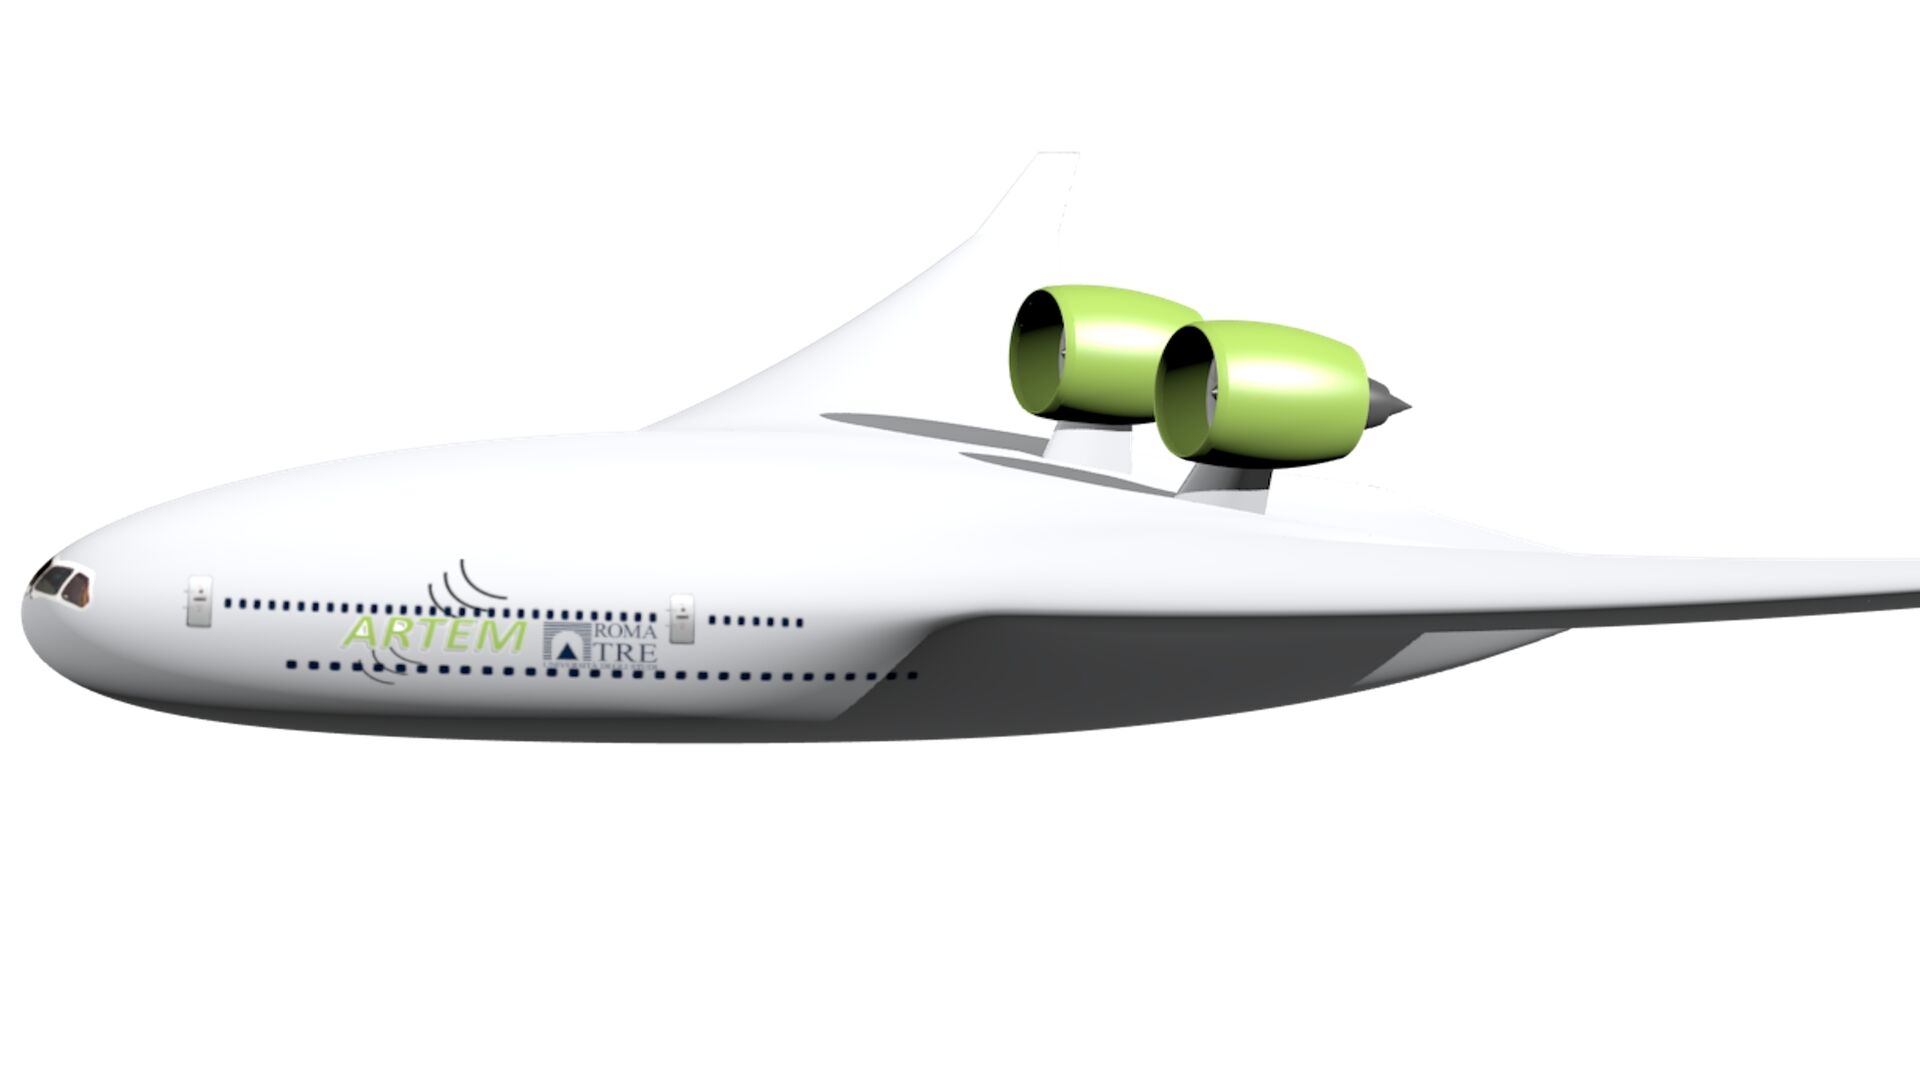 Rumore: le configurazioni di aeromobili del 2035 e 2050, in sigla BWB, immaginate dal progetto ARTEM dell’Unione Europea